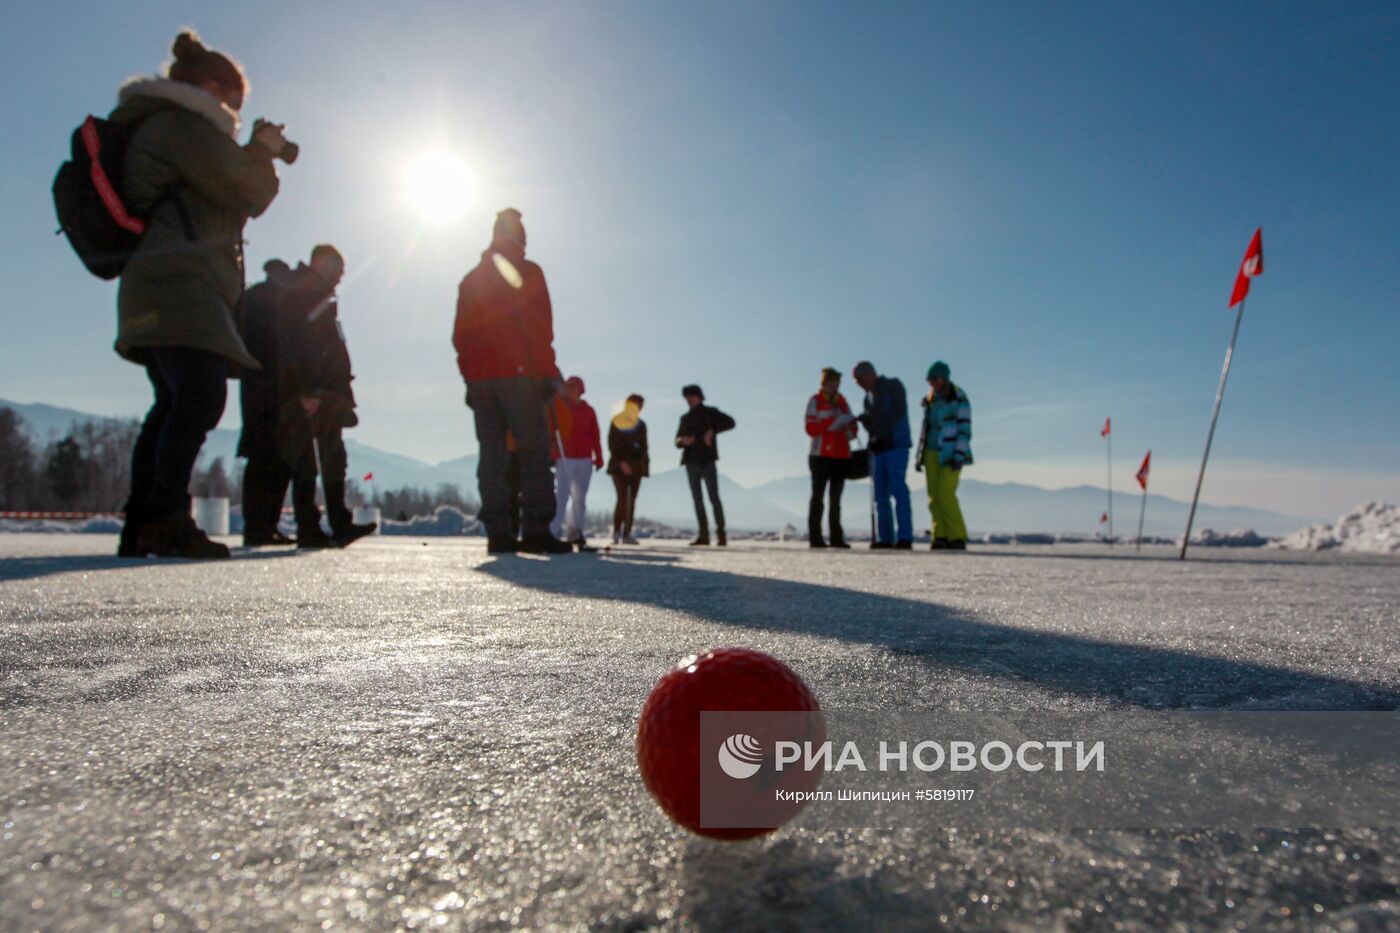 Гольф-турнир на льду Байкала